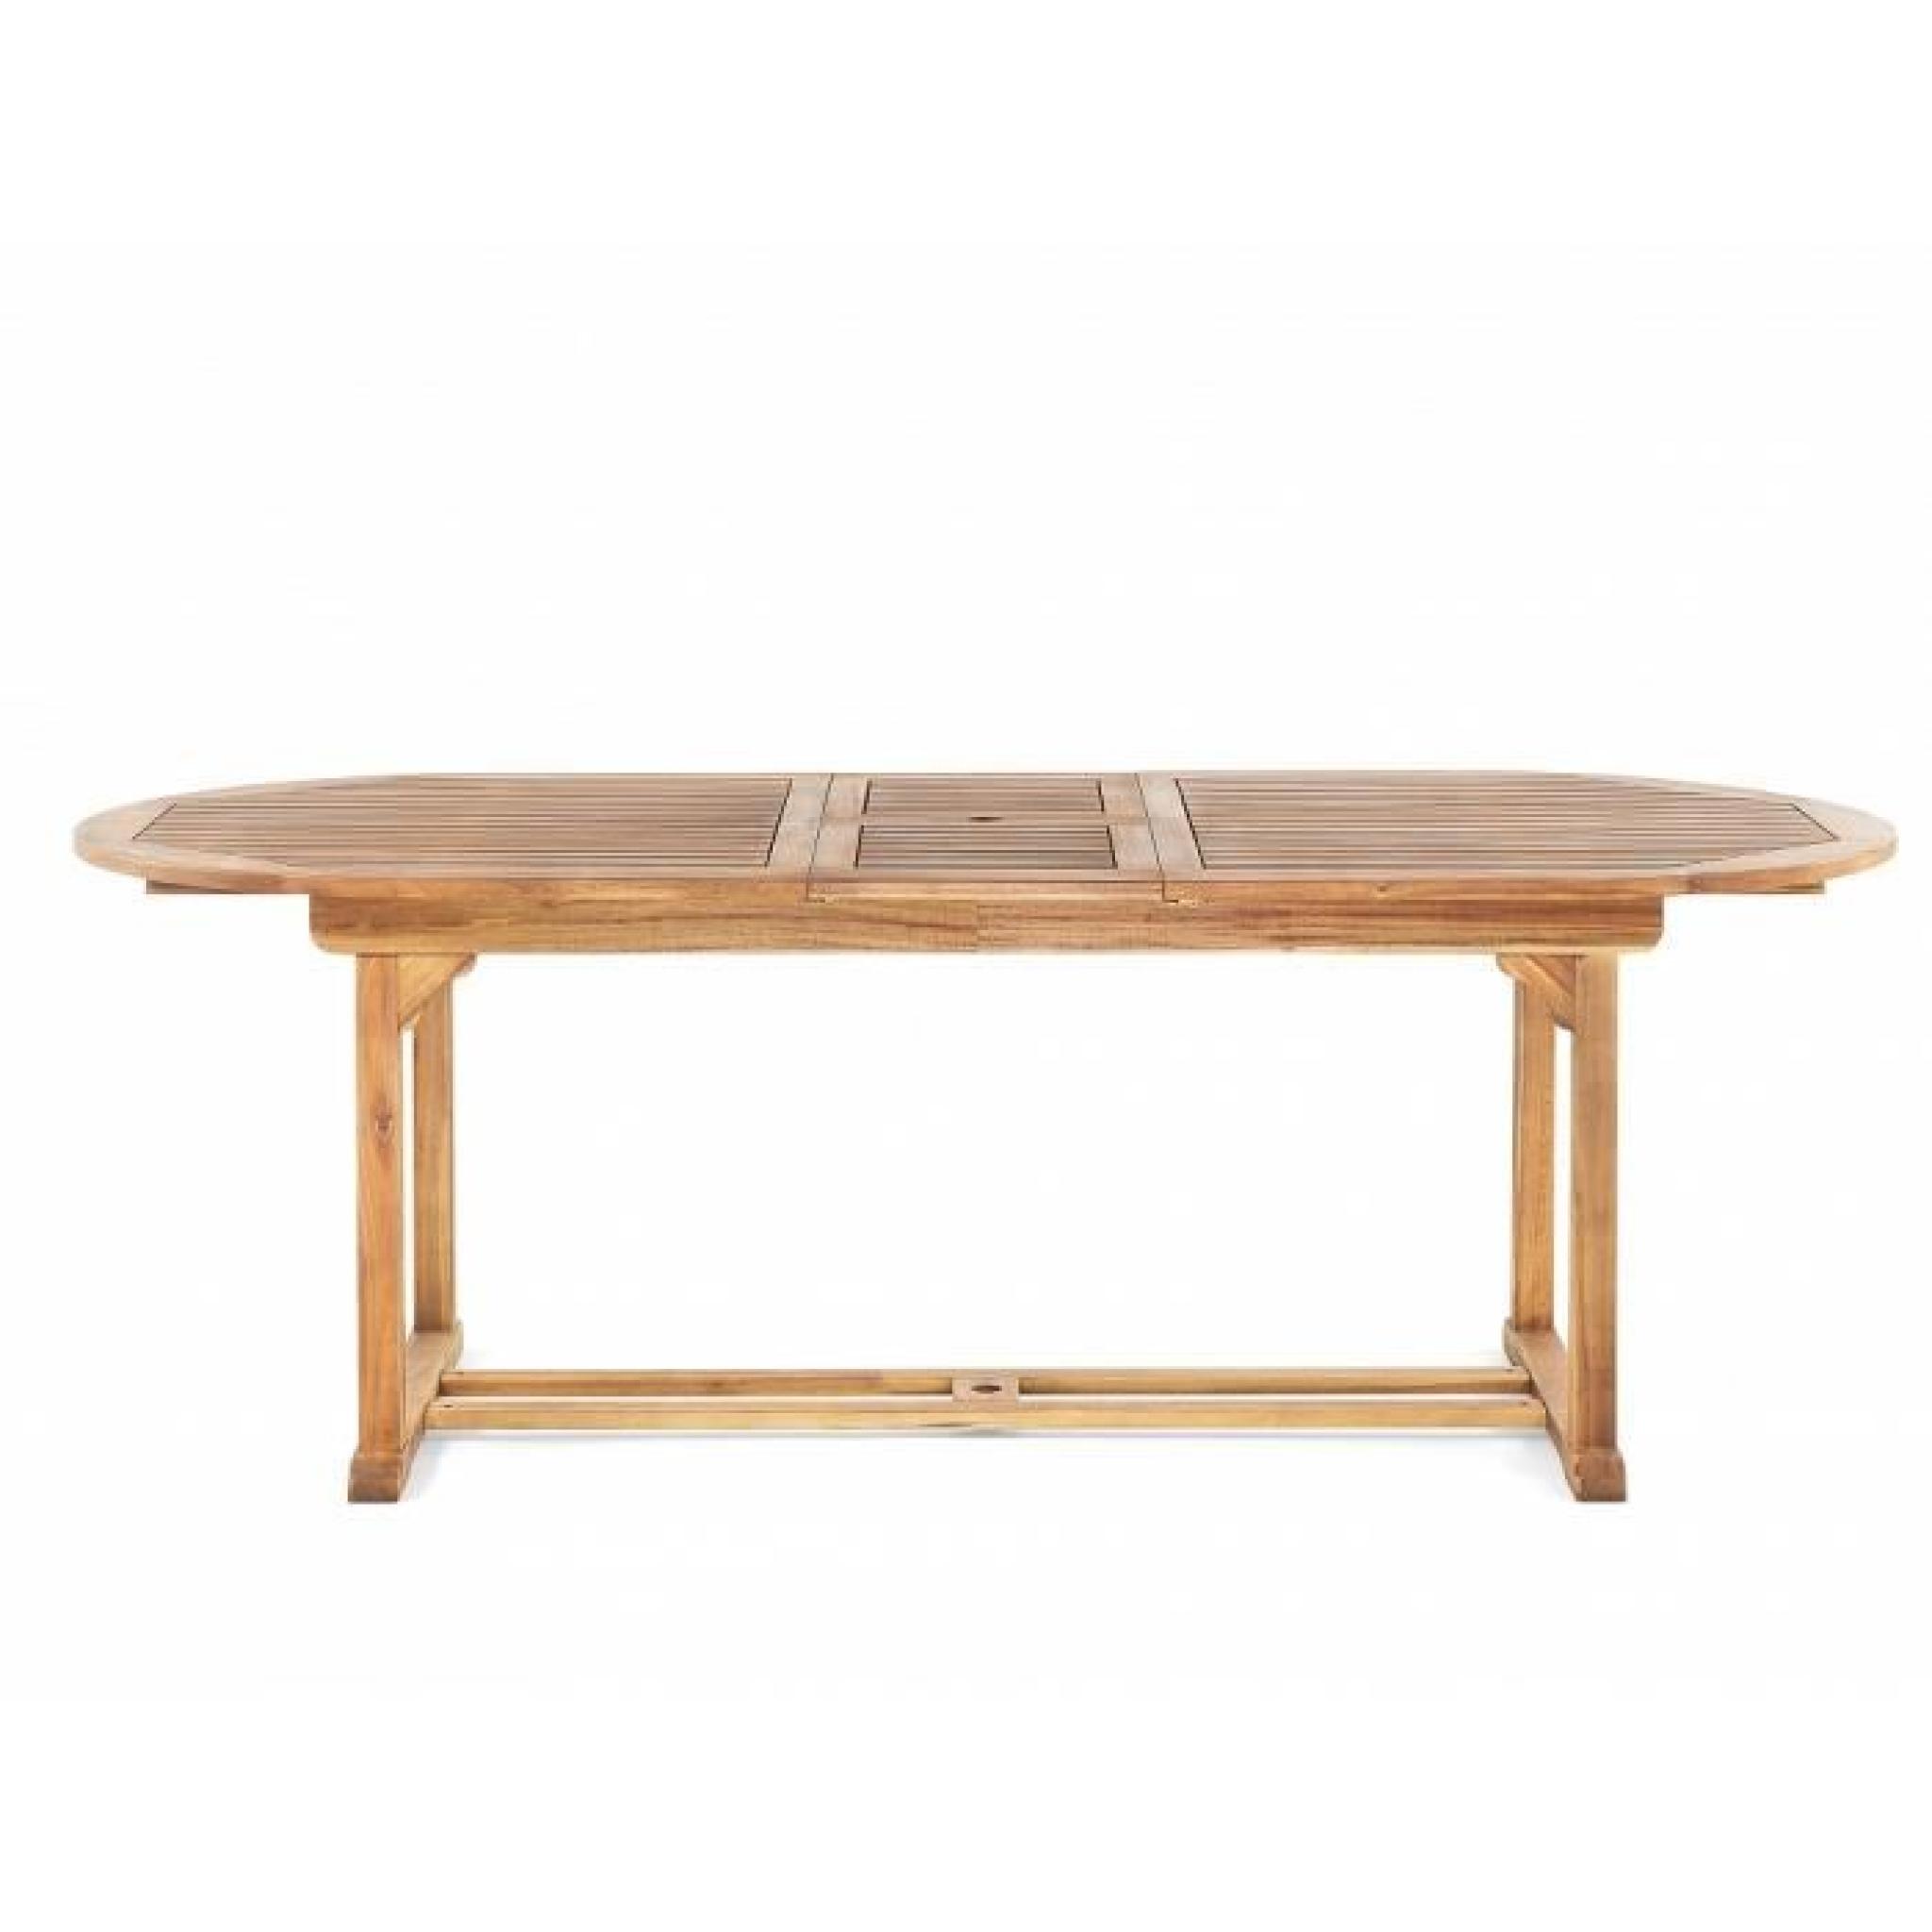 Table de jardin - table en bois ovale à rallonges - brun - Maui